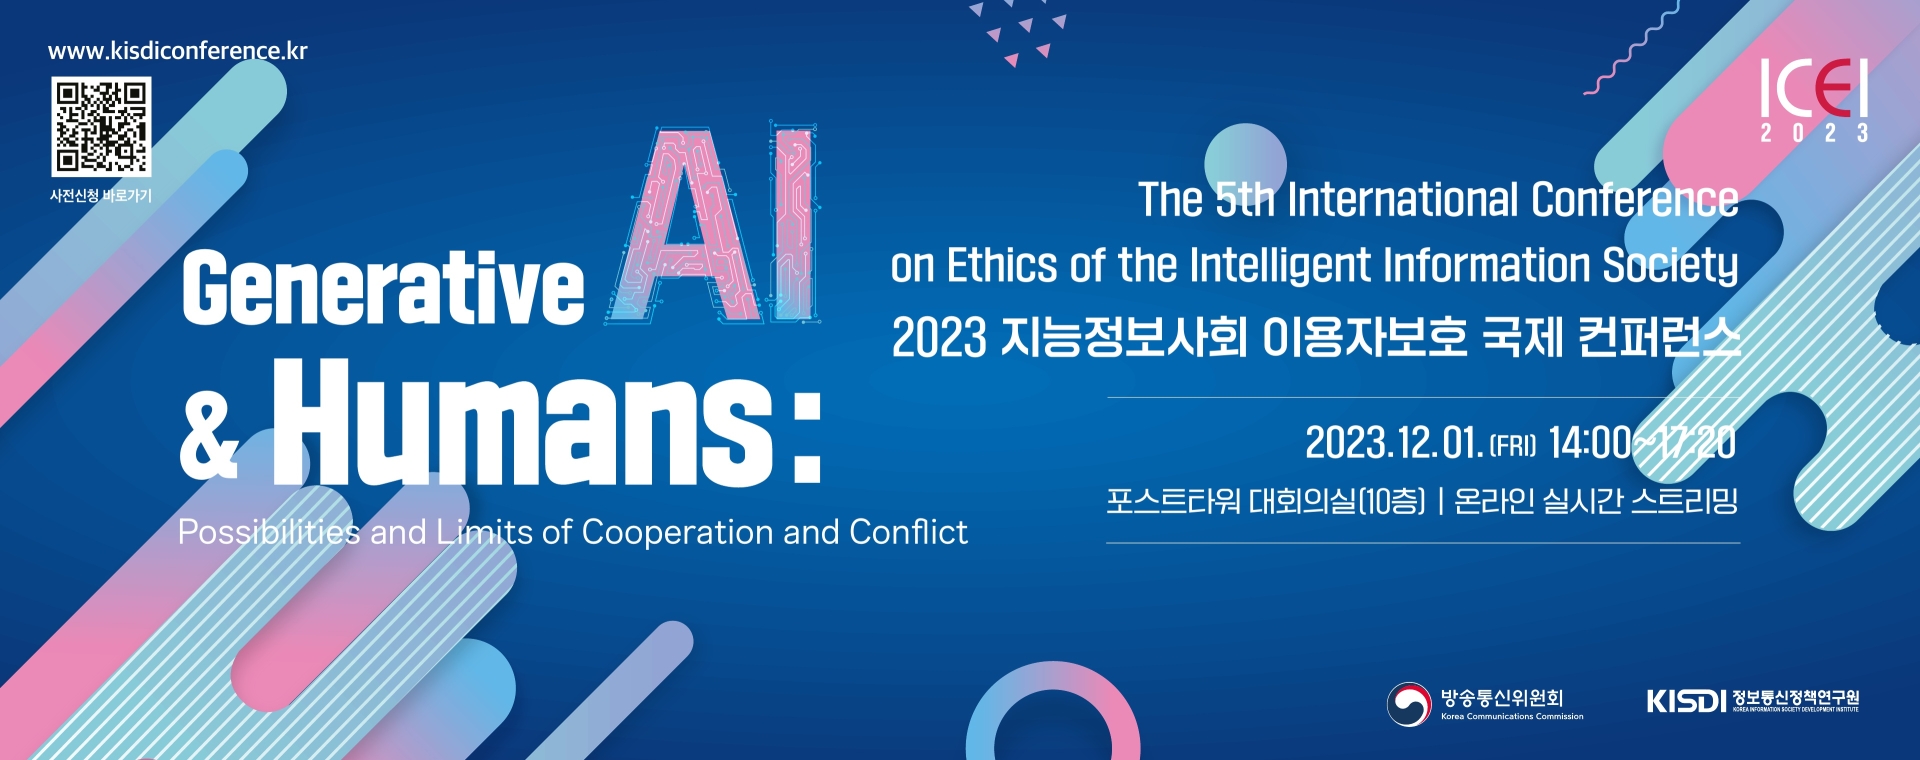 2023 지능정보사회 이용자 보호 국제 컨퍼런스